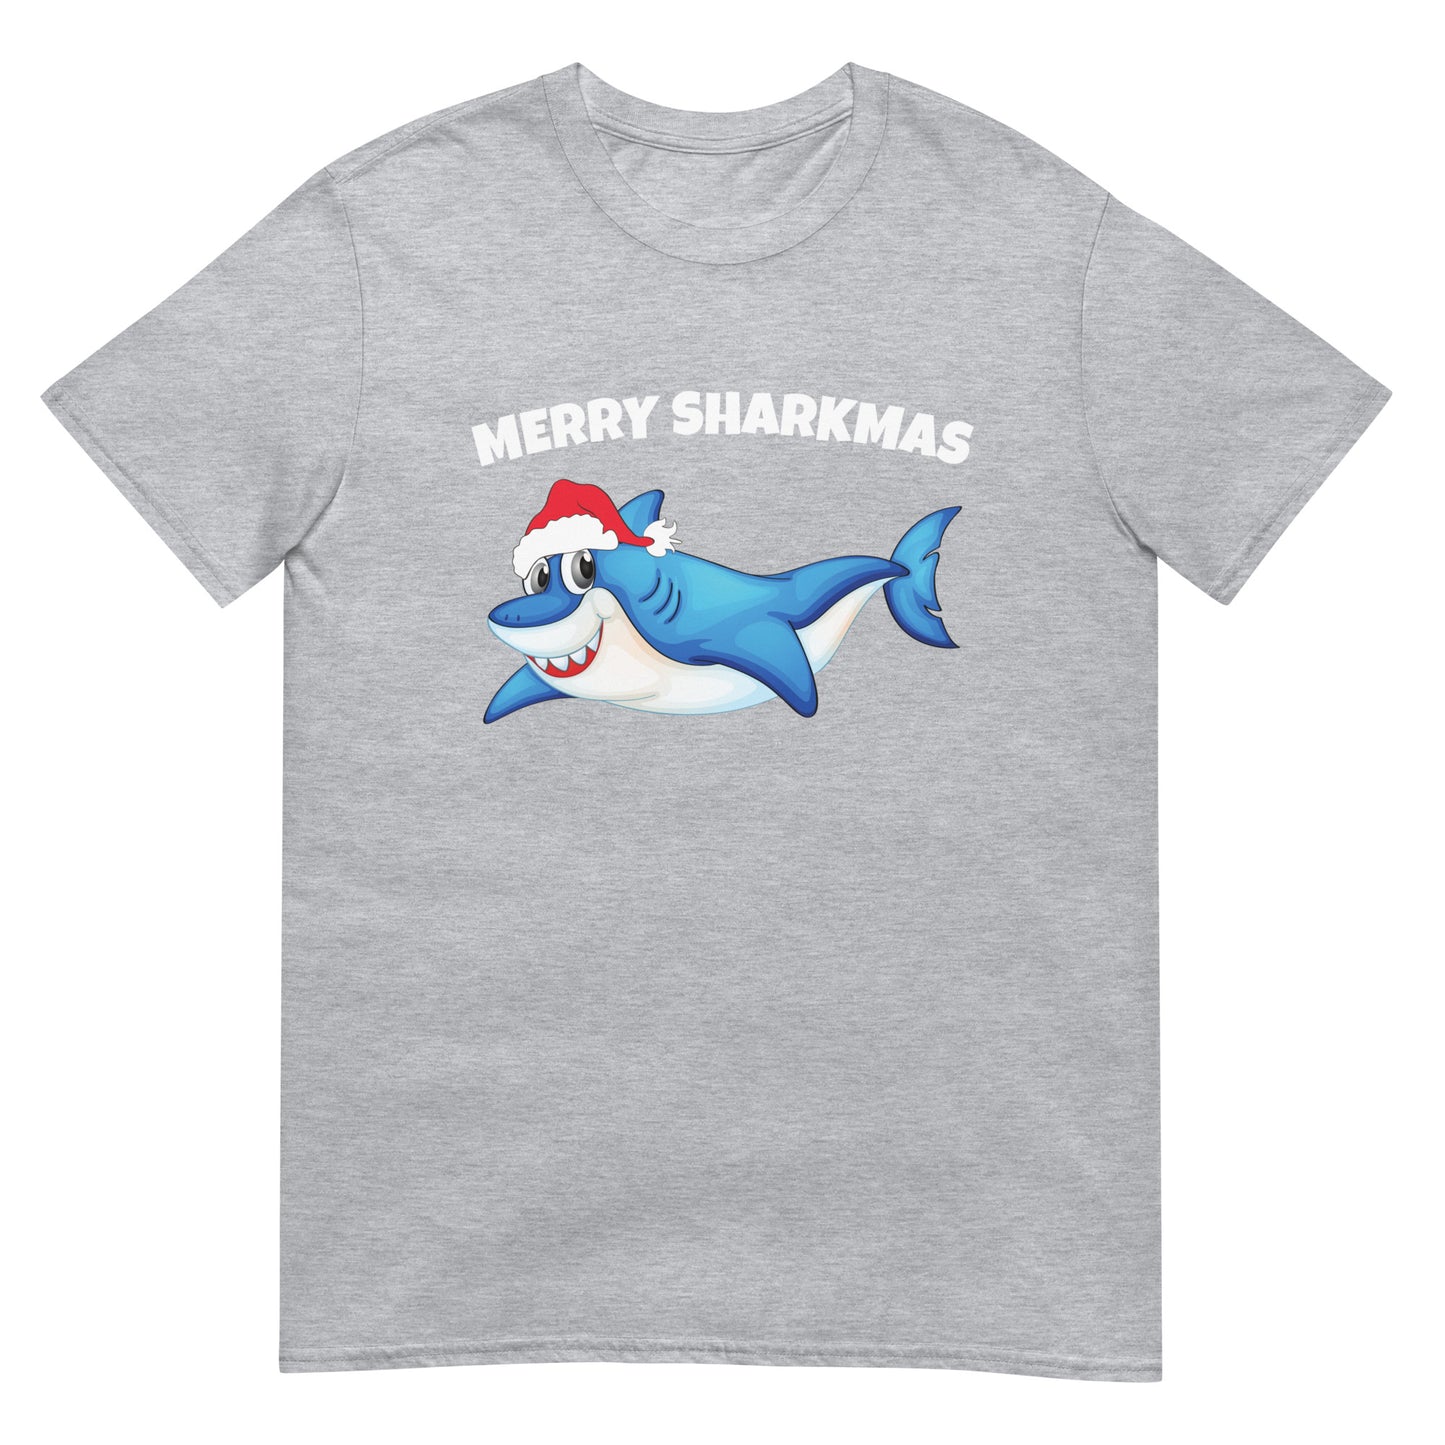 Merry Sharkmas T-Shirt